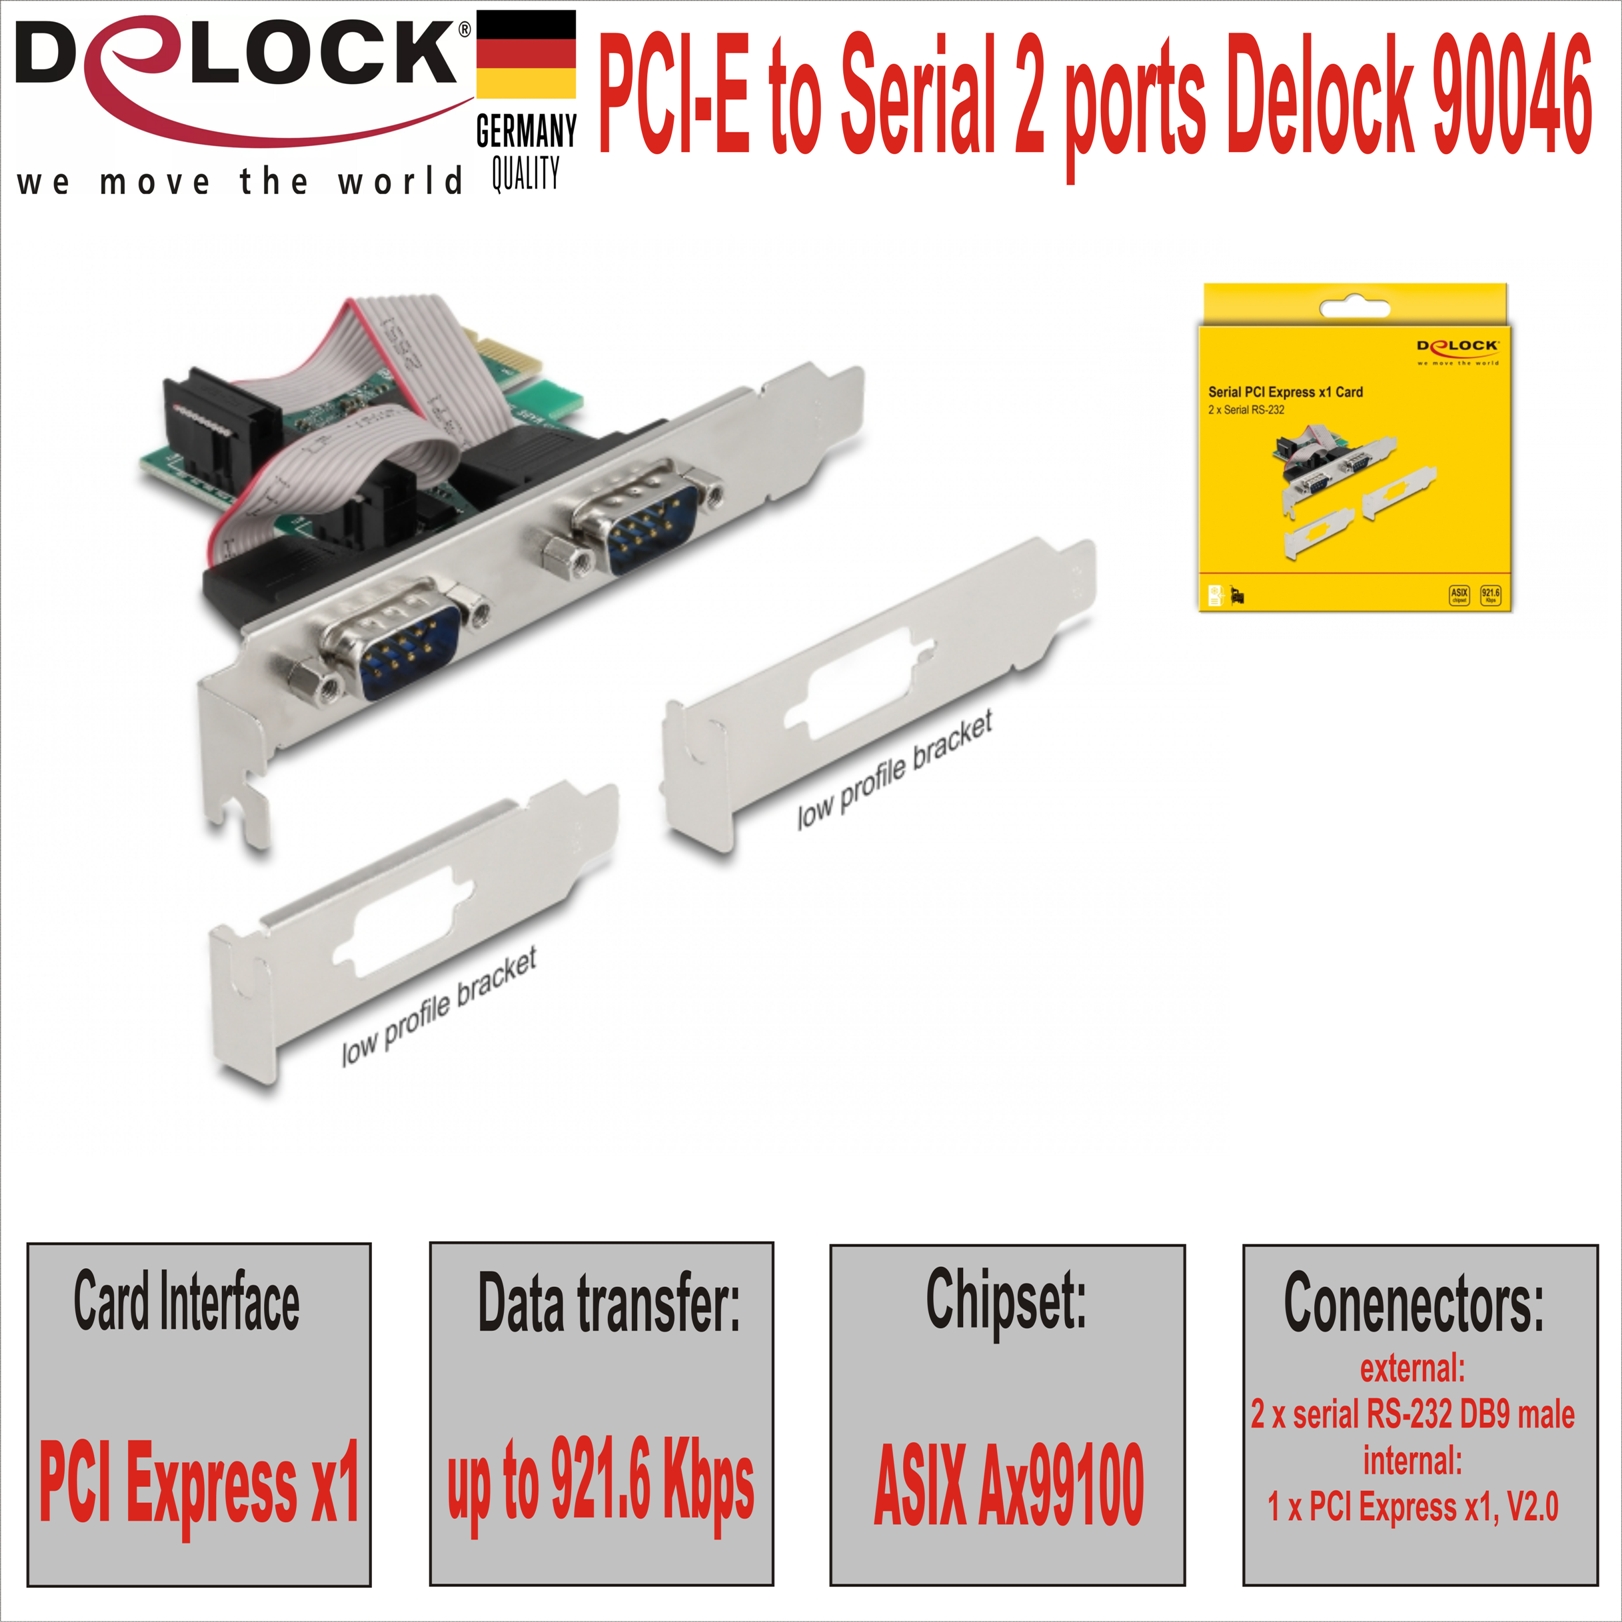 PCI-E to Serial 2 ports Delock 90046